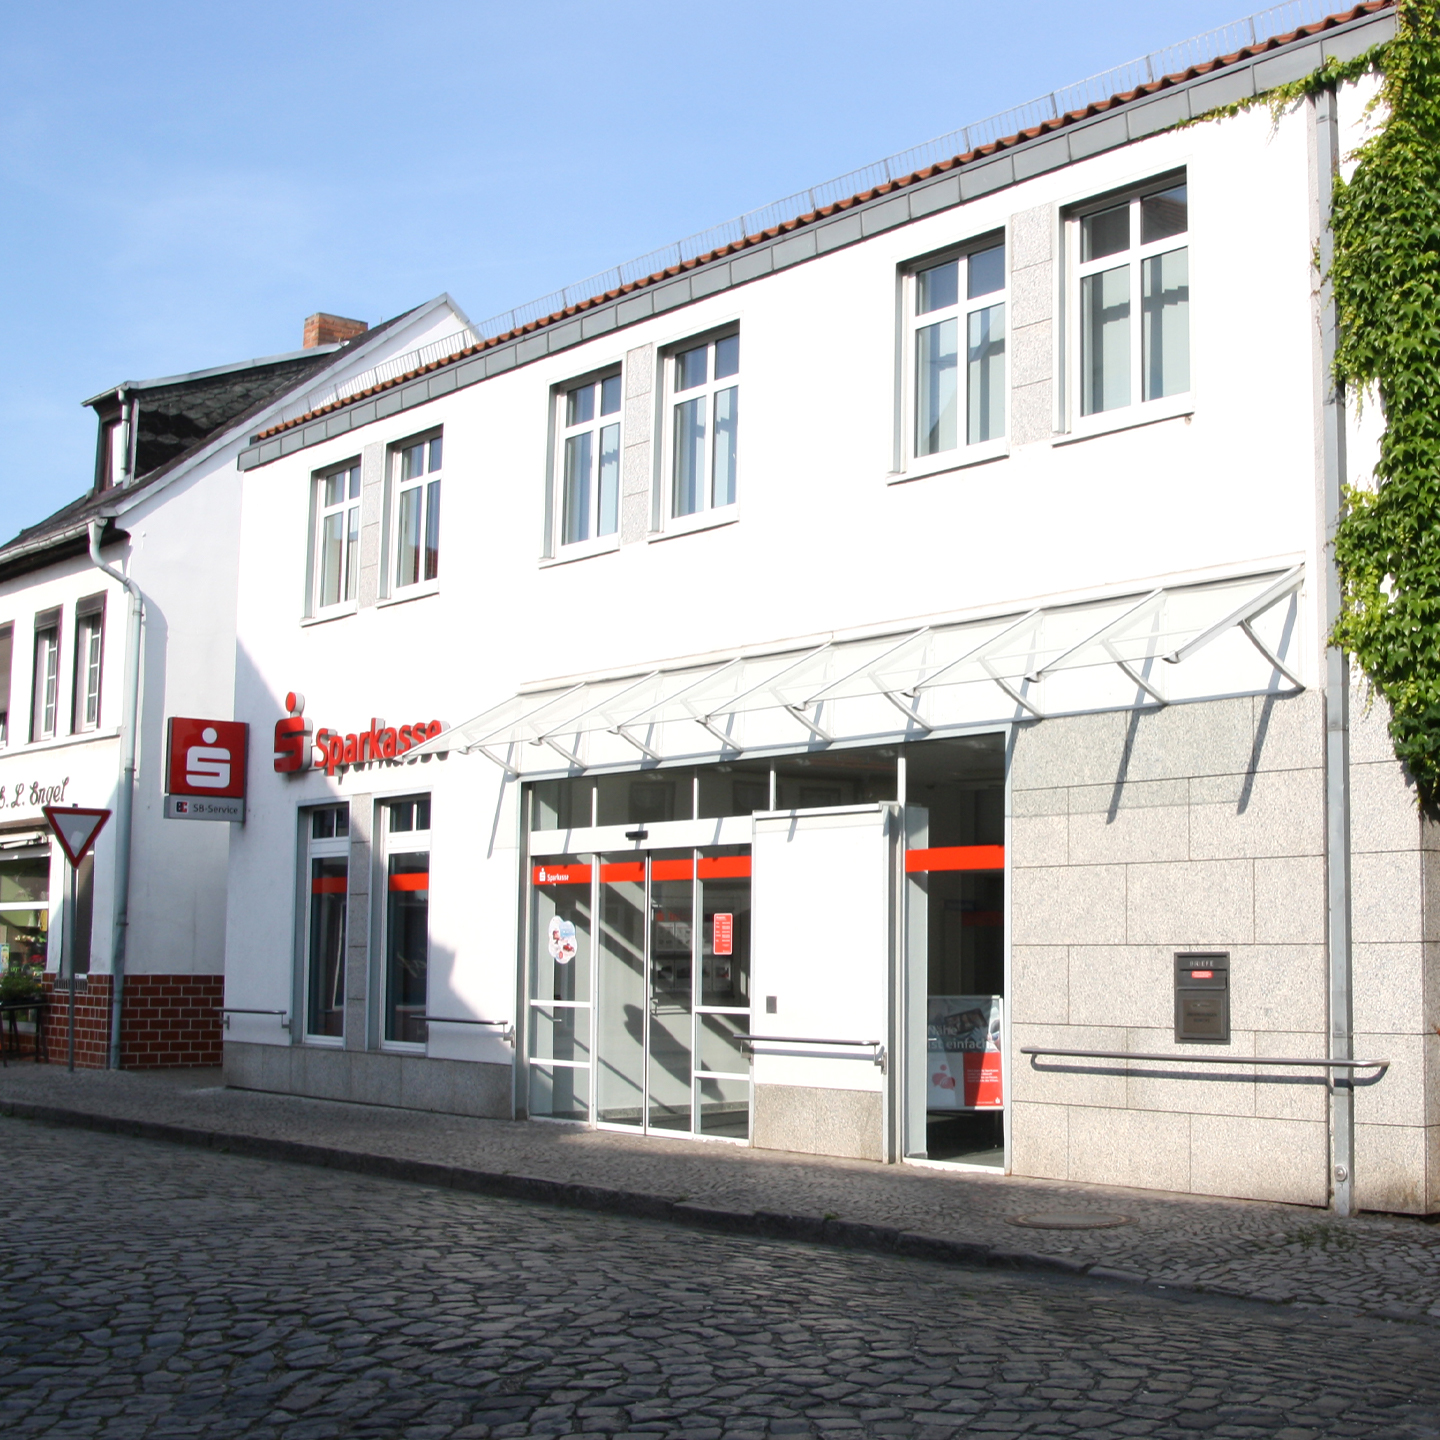 Foto der Filiale Geschäftsstelle Nienburg